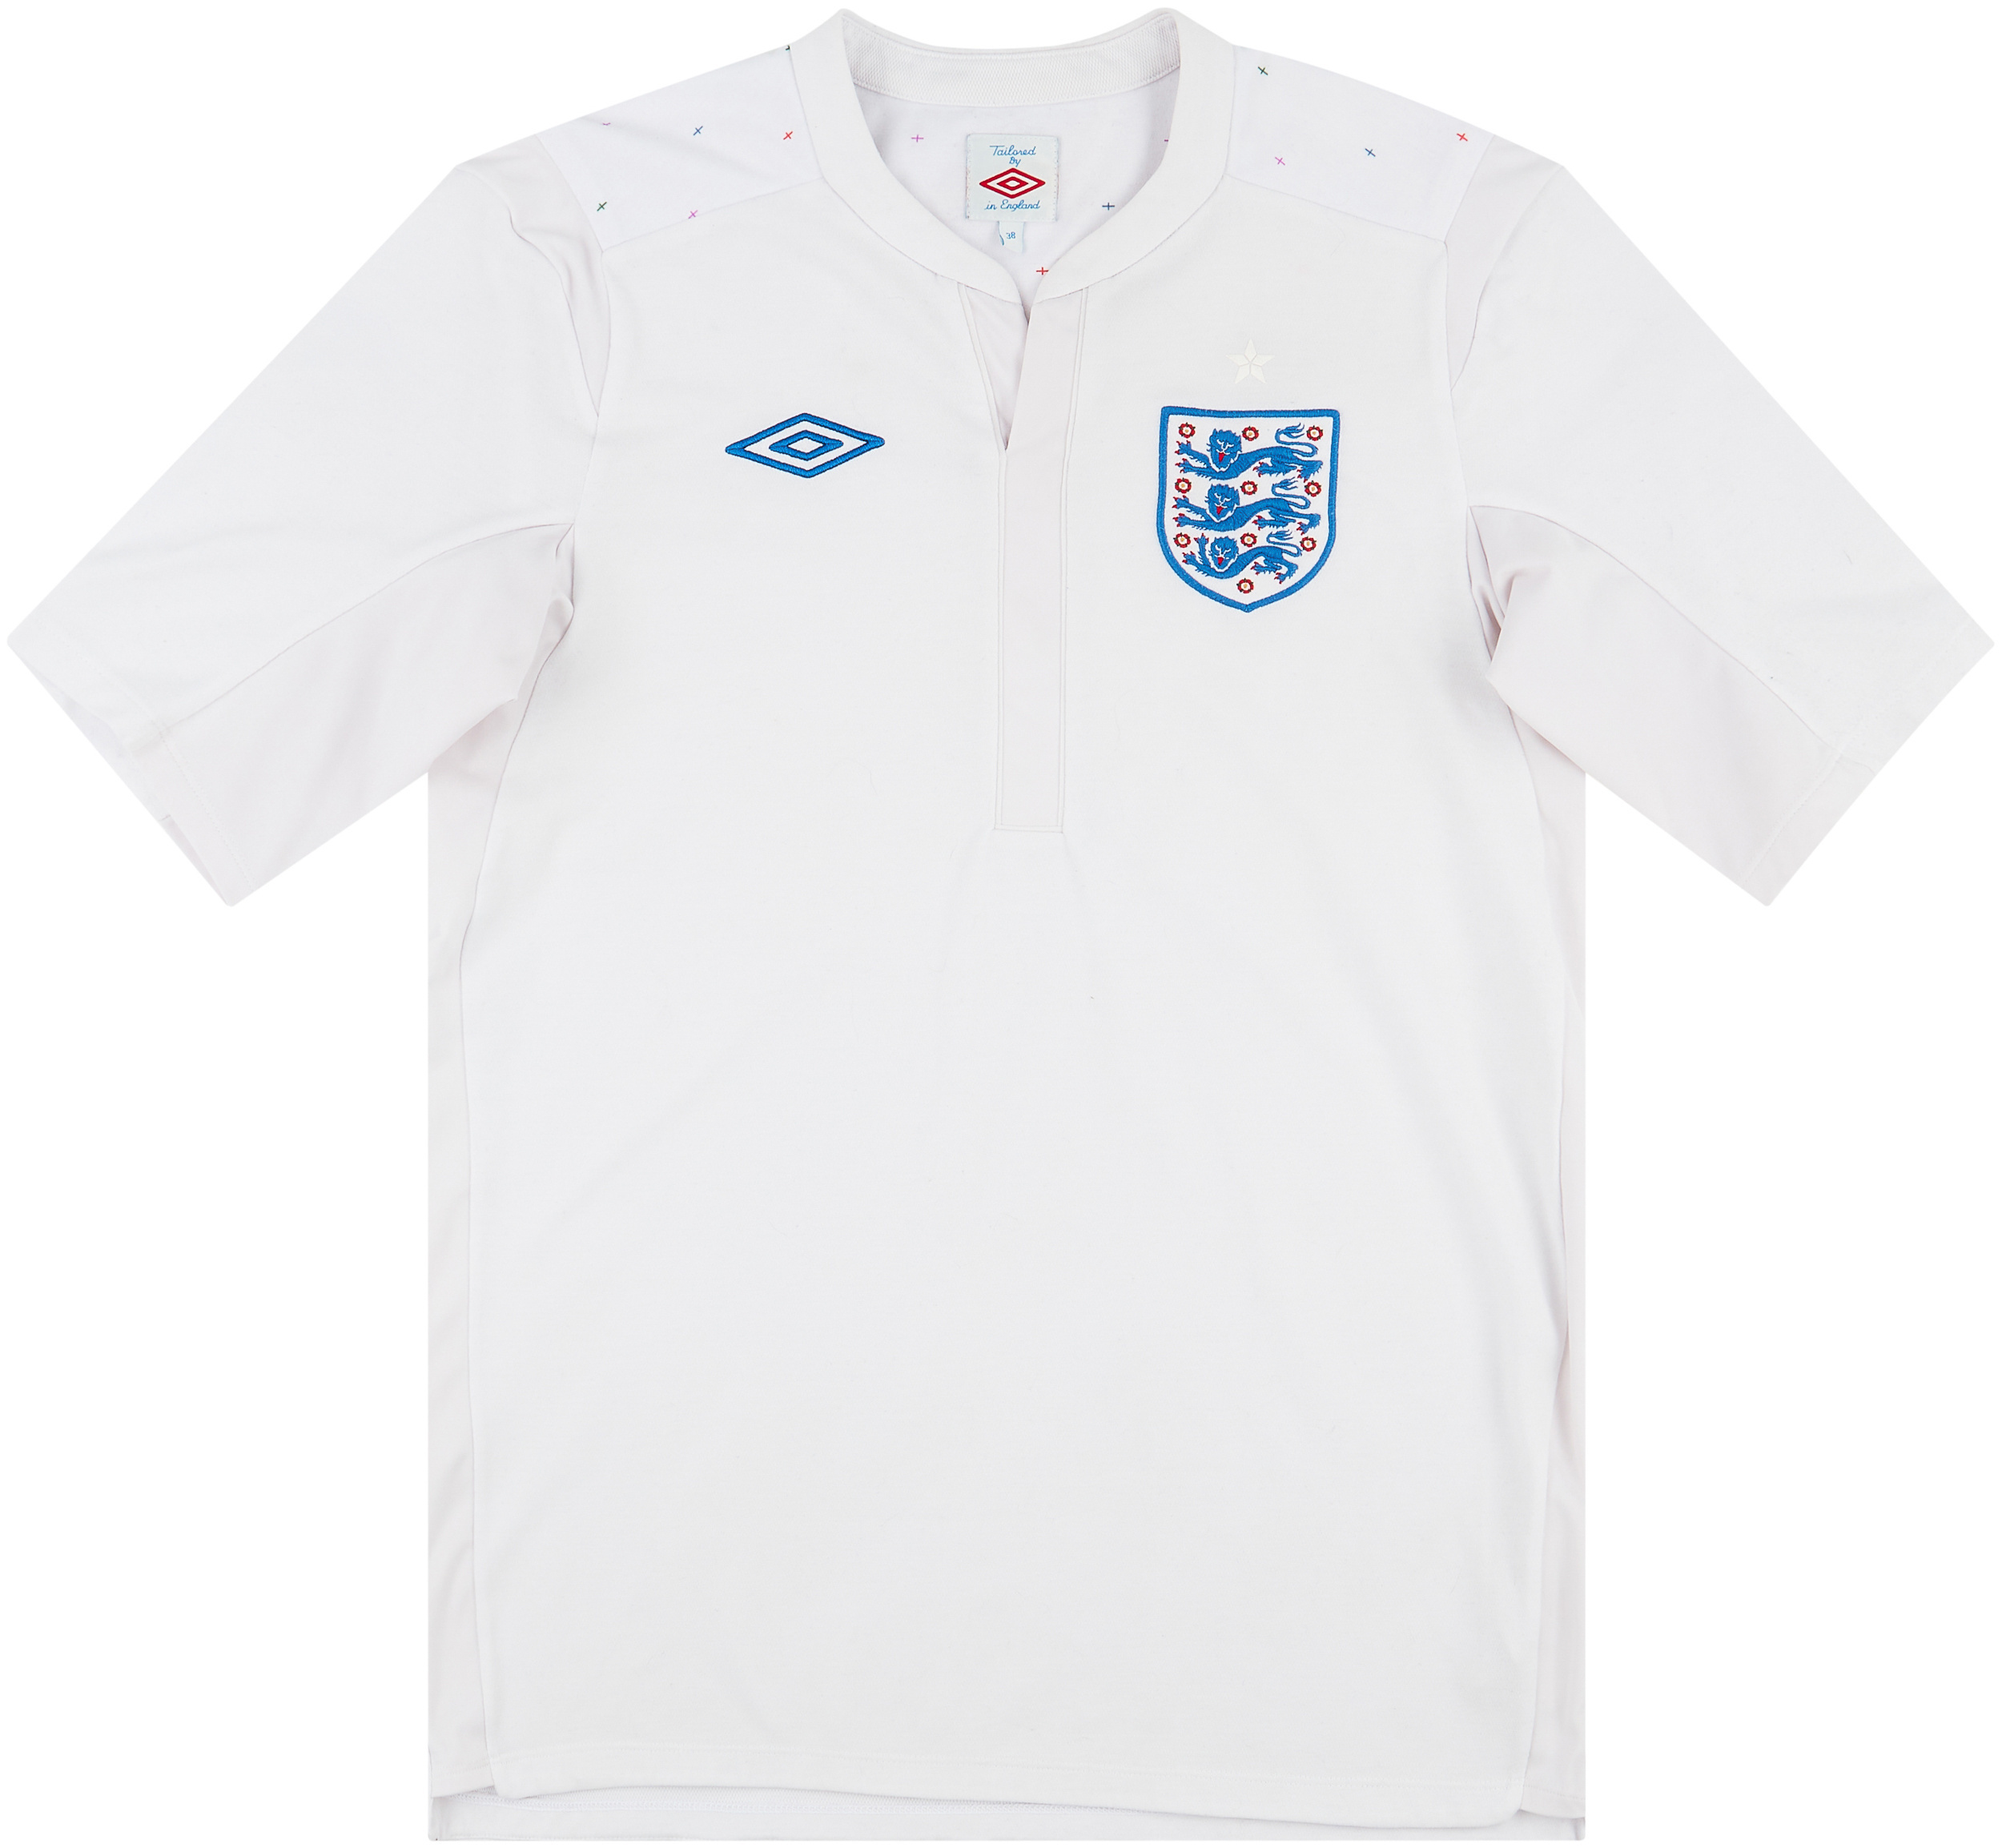 2010-11 England Home Shirt - 8/10 - ()